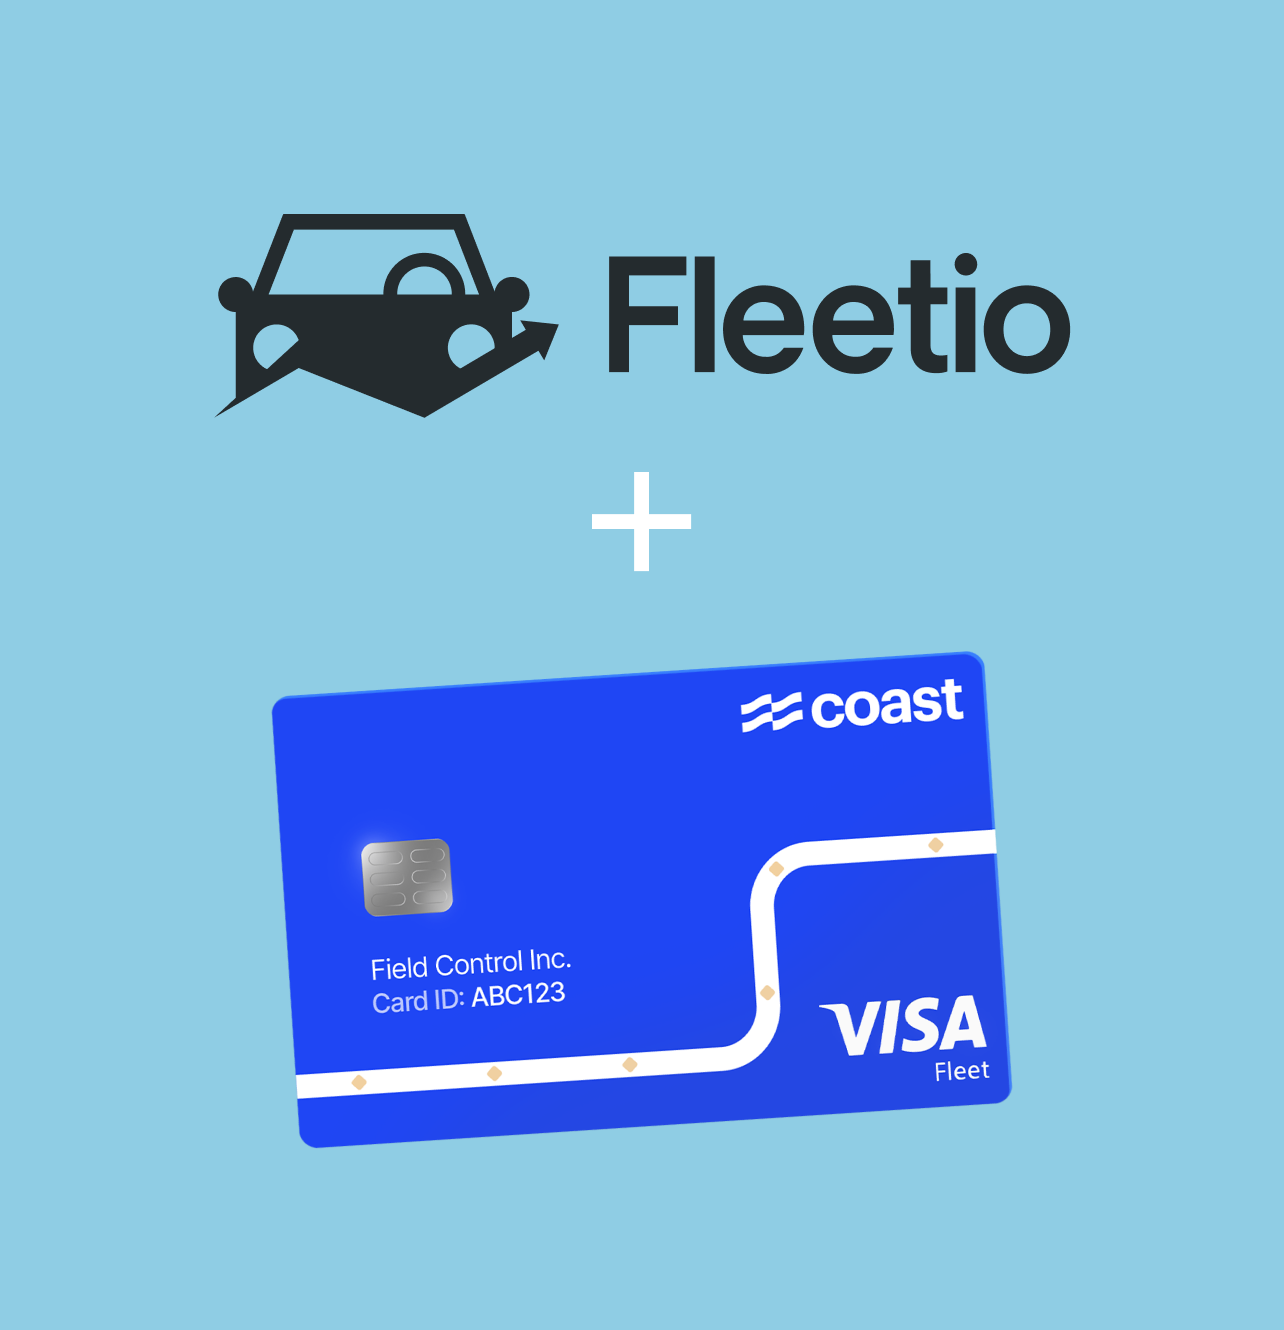 fleetio and coast card